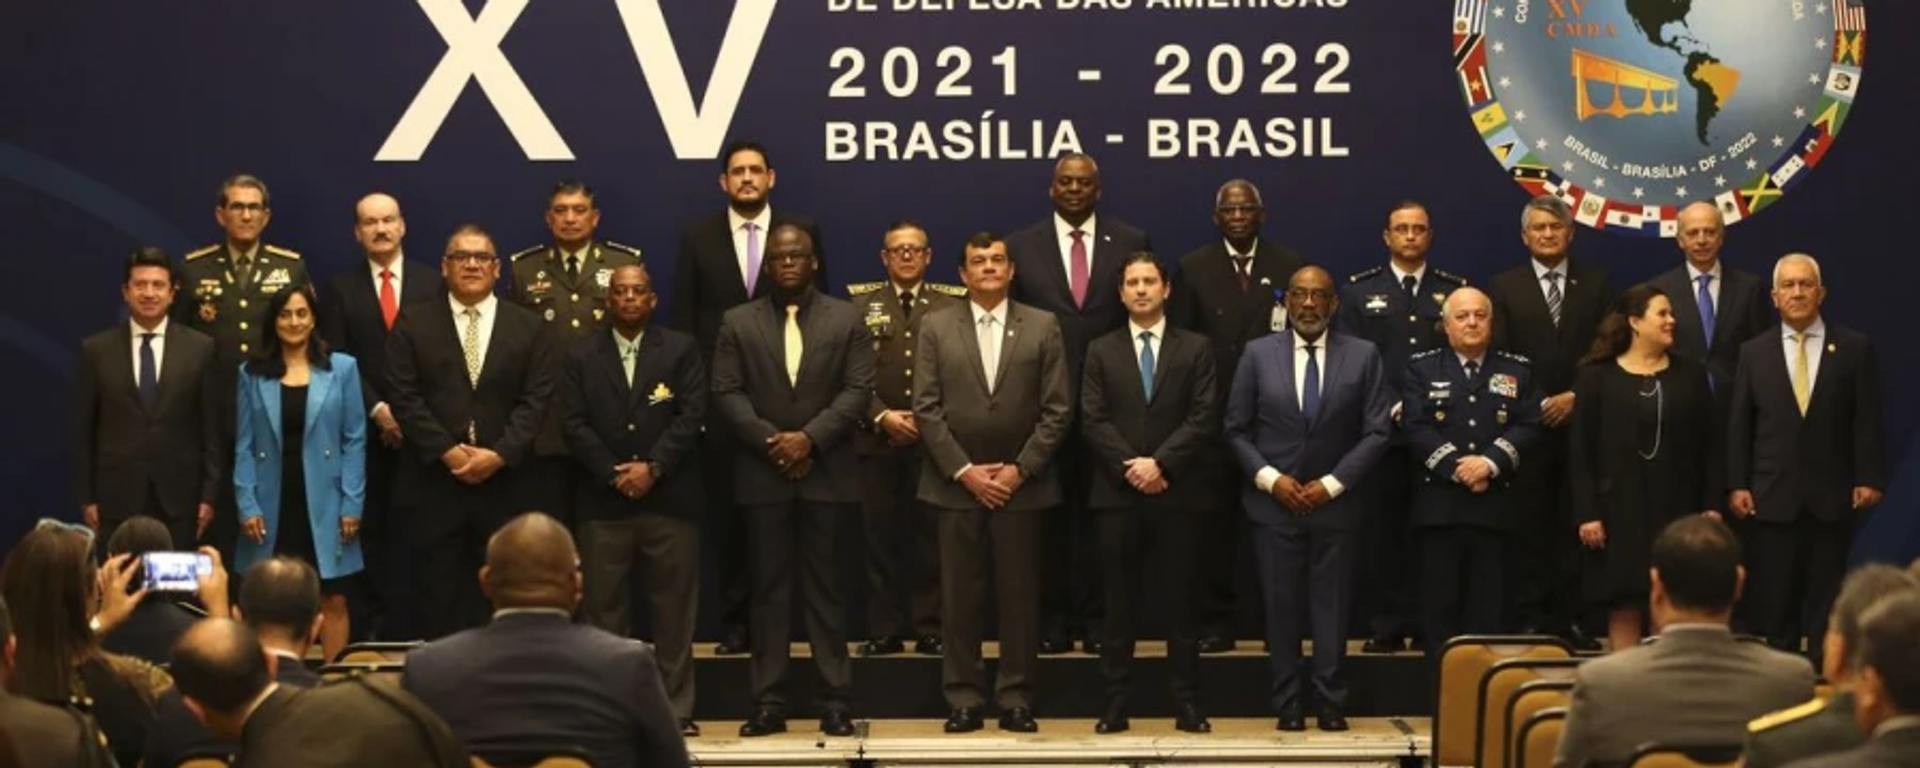 XV Conferencia de Ministros de Defensa de las Américas (CMDA), celebrada en Brasilia, en julio de 2022 - Sputnik Mundo, 1920, 29.07.2022